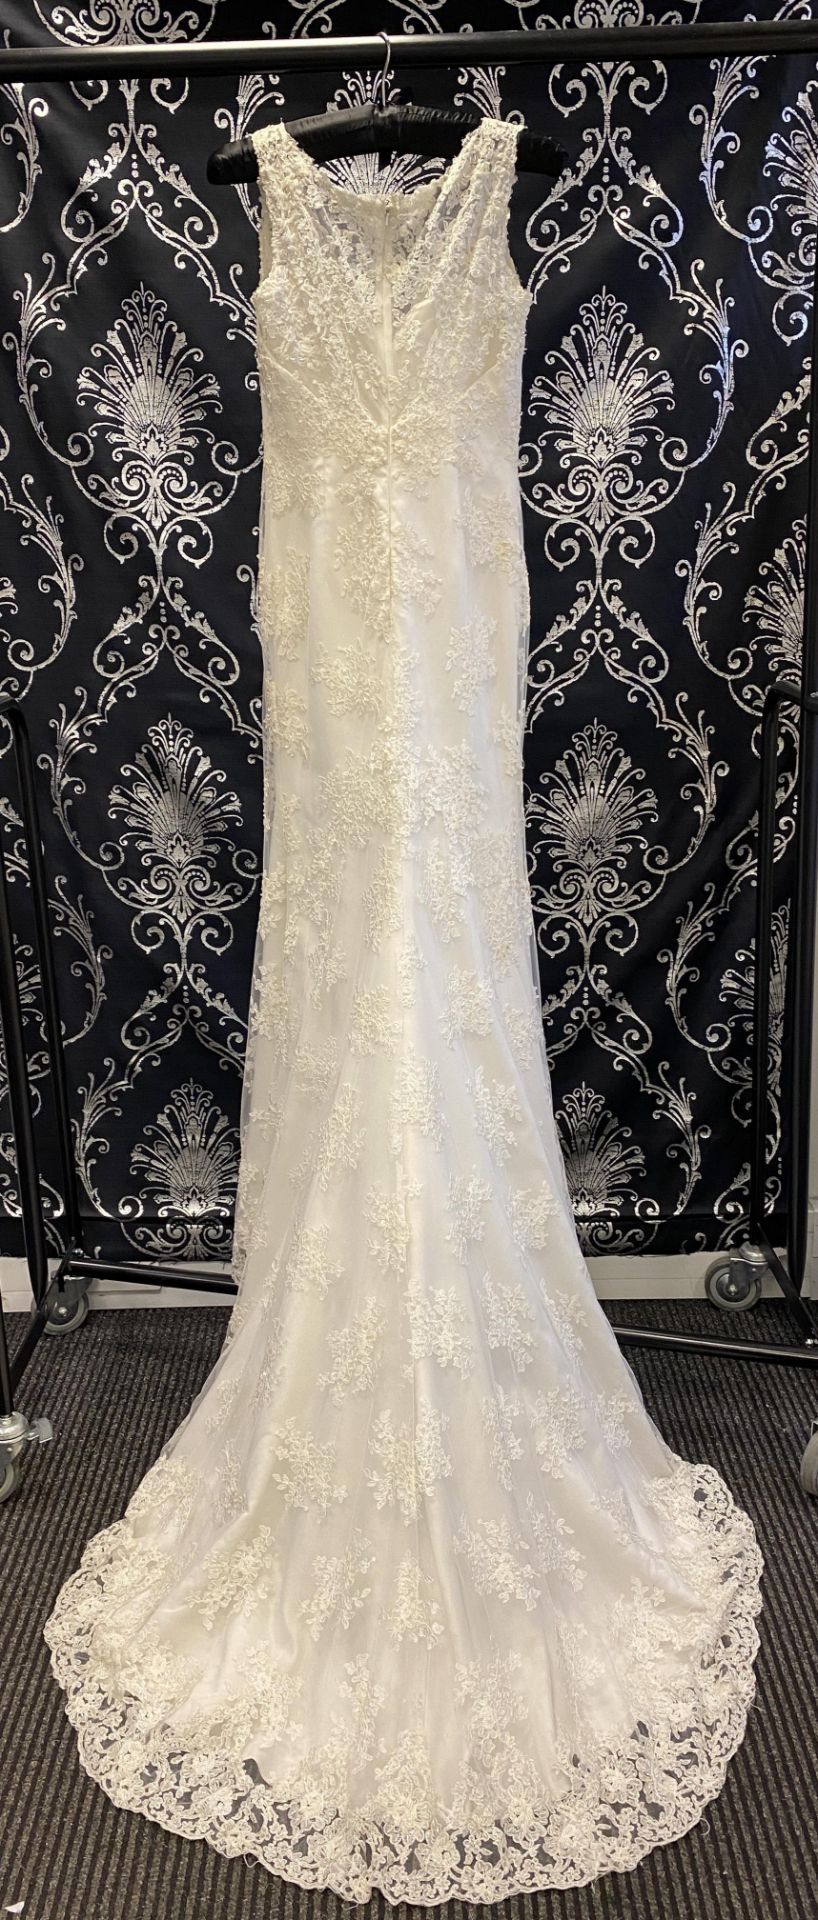 1 x LUSAN MANDONGUS 'Seychelle' Lace Overlay Biased Cut Designer Wedding Dress RRP £1,500 UK10 - Image 6 of 9